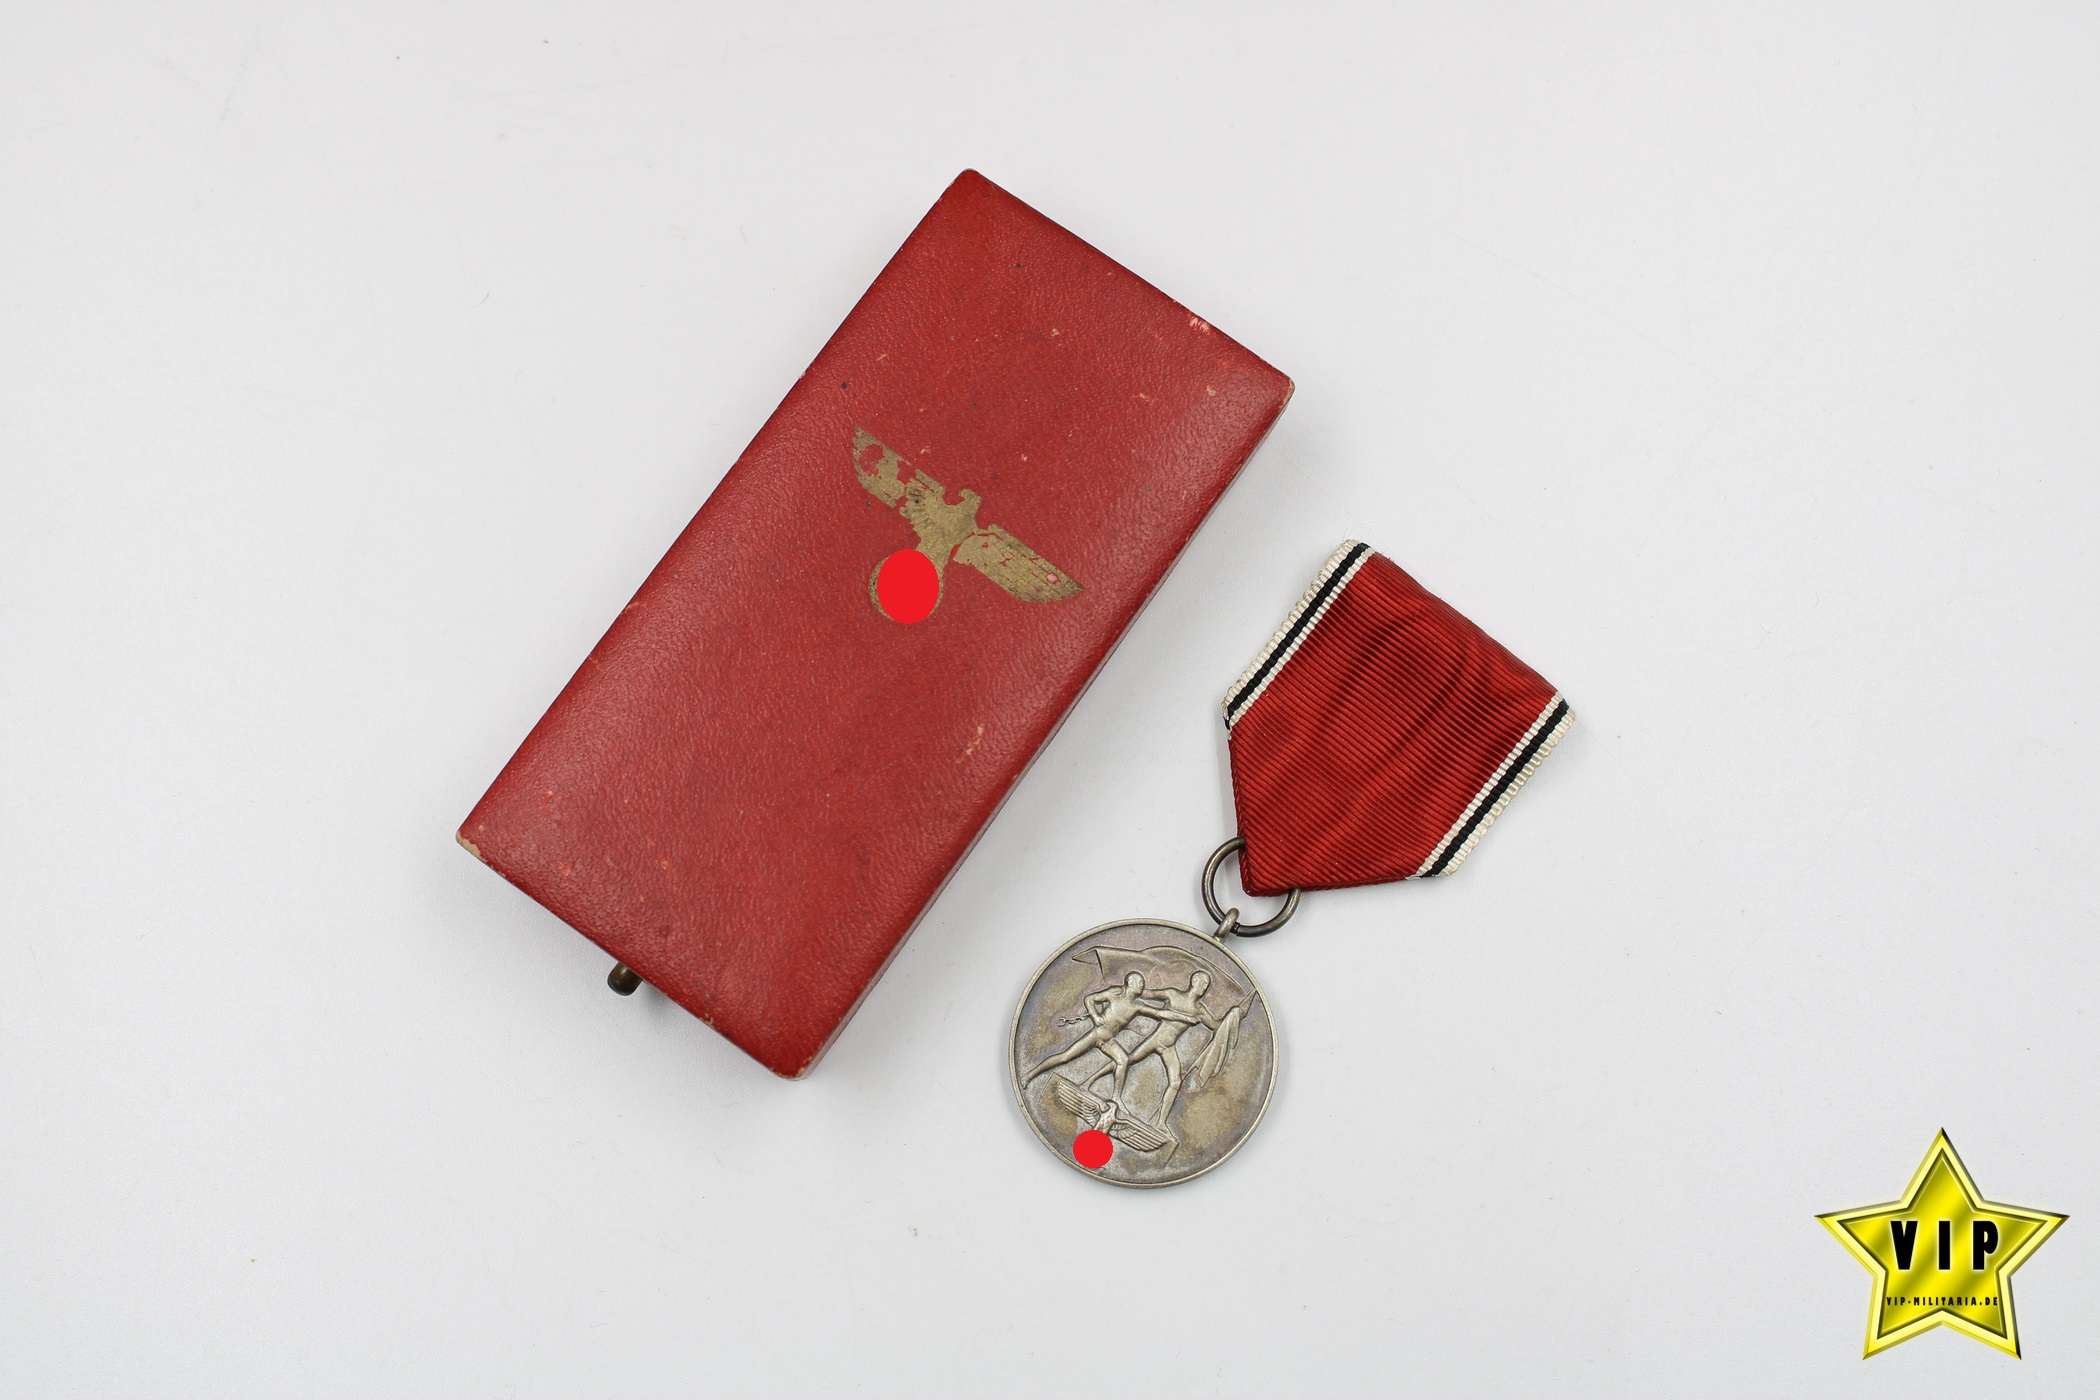 Anschluss Medaille 13. März 1938 Österreich im Verleihungsetui Hauptmünzamt Wien